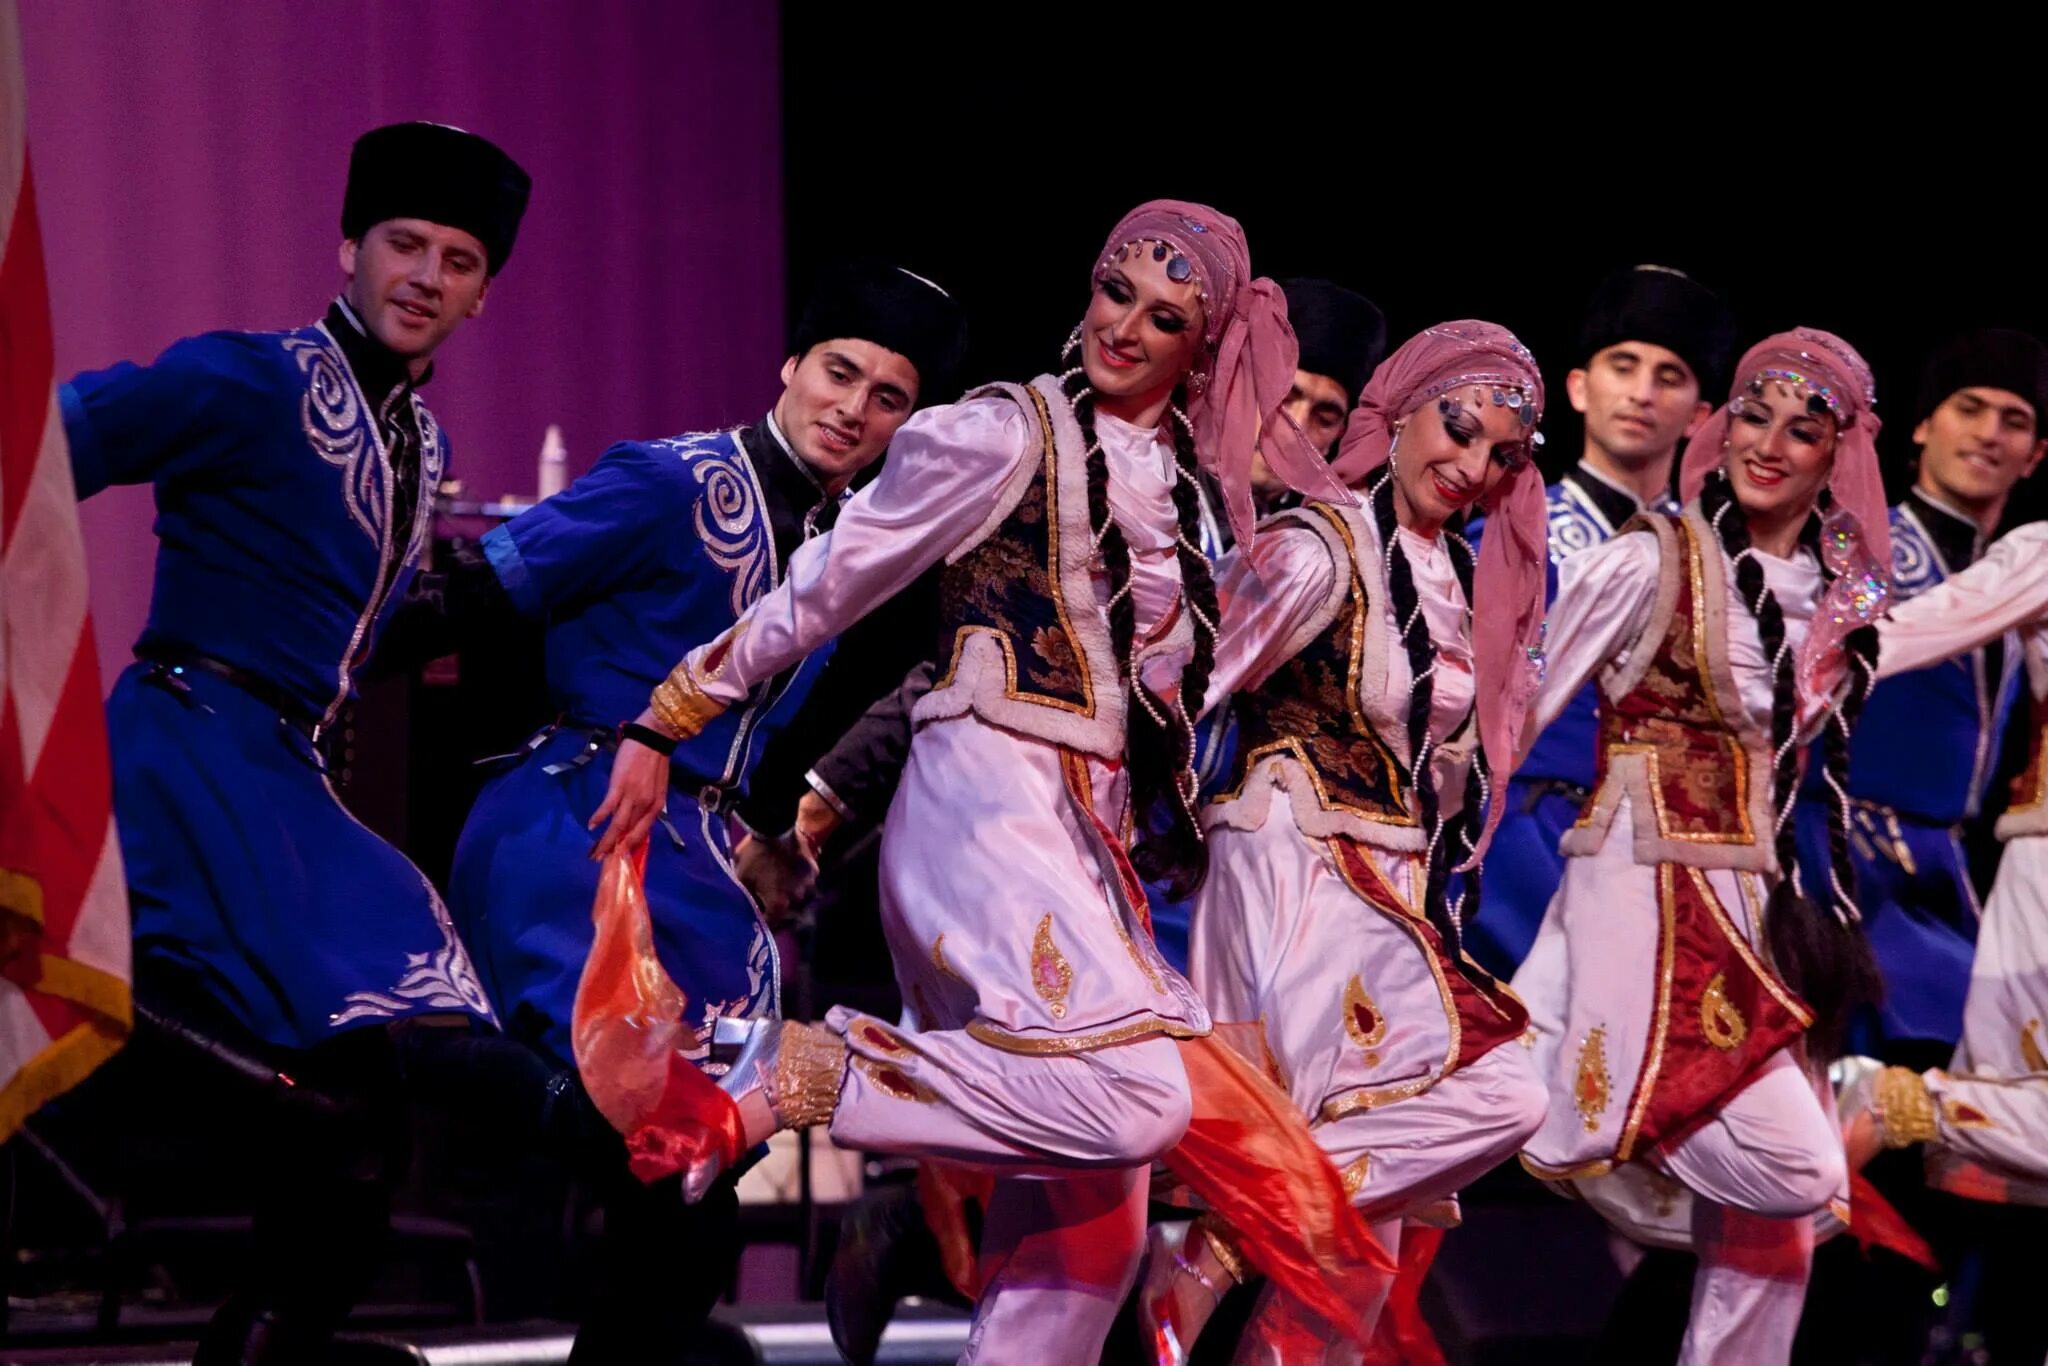 Яллы танец Азербайджана. Тензэрэ танец Азербайджана. Национальные танцы Азербайджана. Ялла танец азербайджанский.